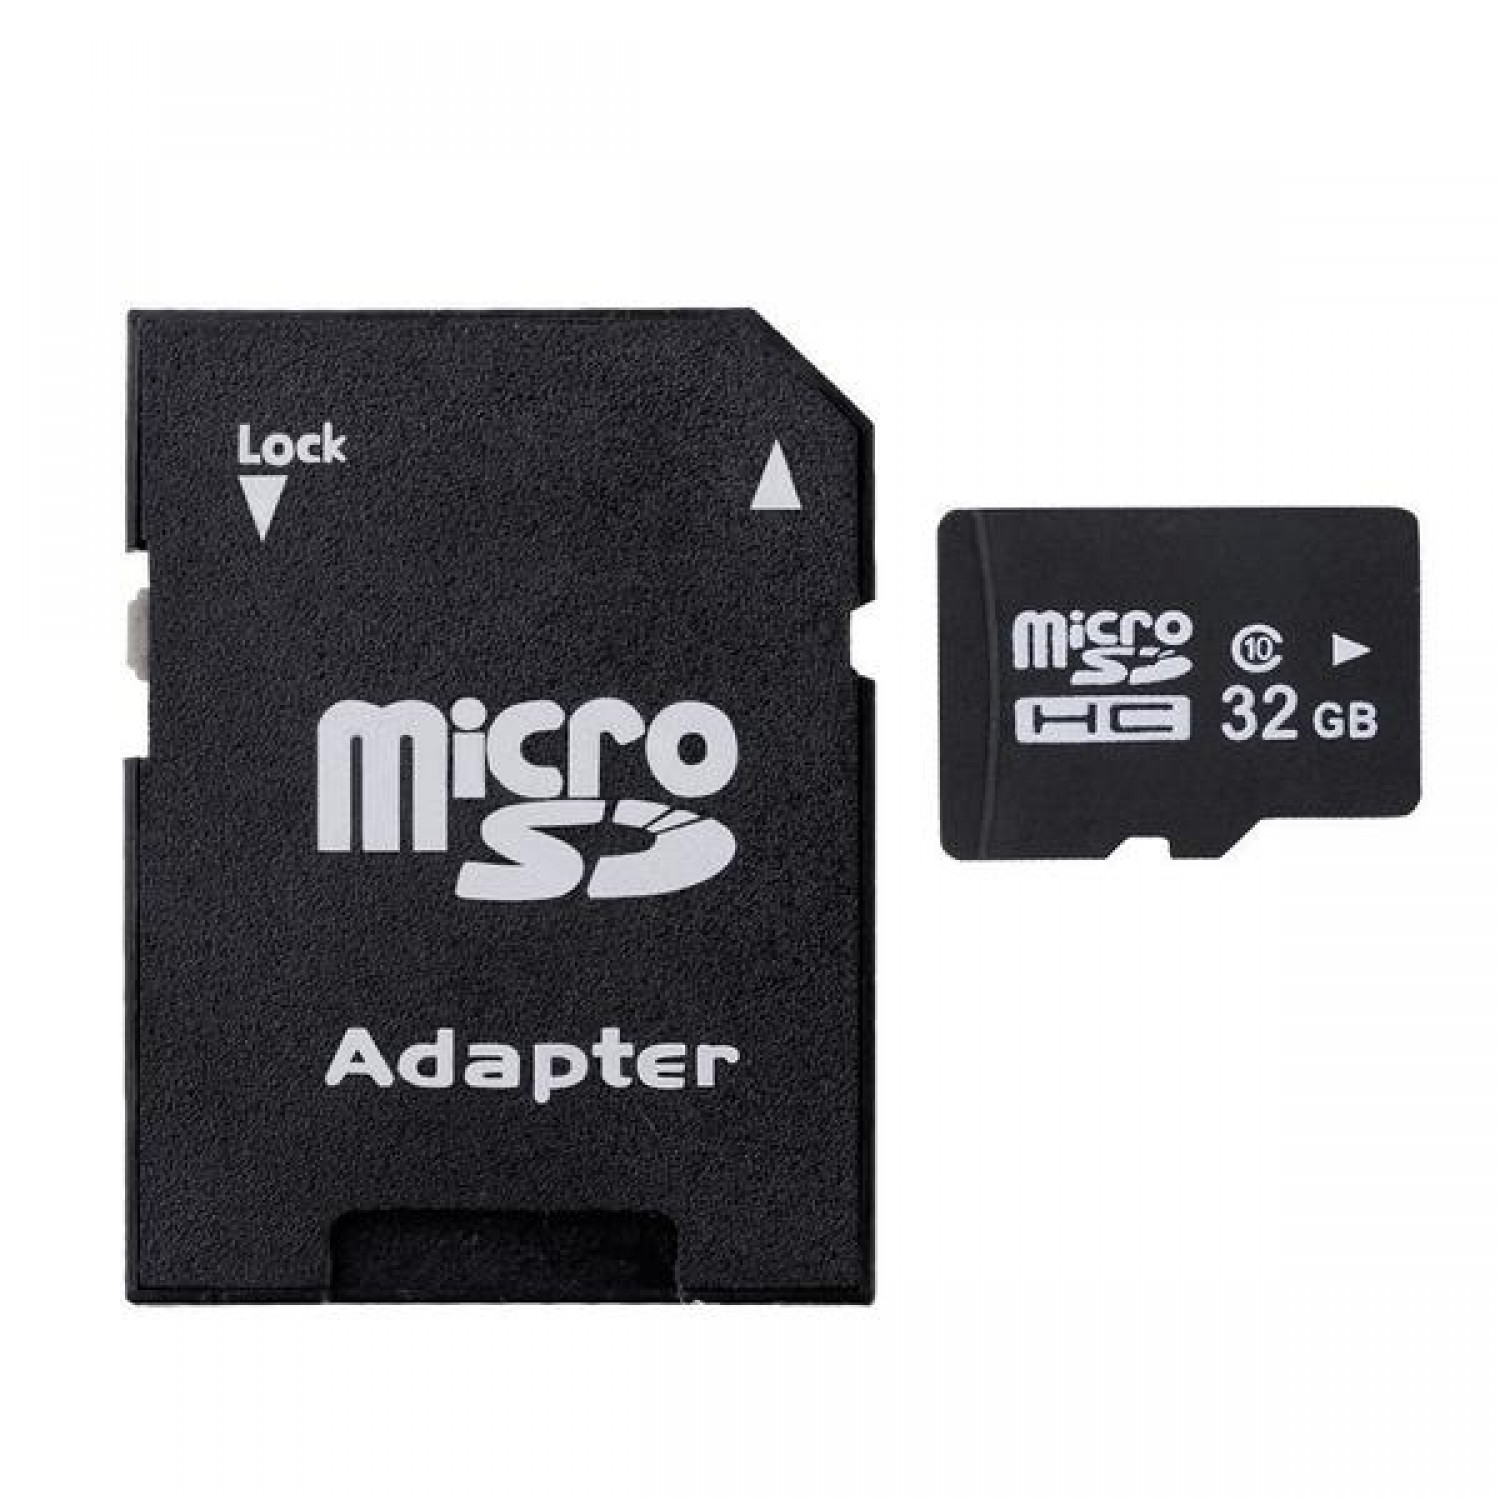 Дешевый микро. Адаптер SD MICROSD. MICROSD 32gb. Микро СД 32 ГБ. MICROSD адаптер для SD карт.